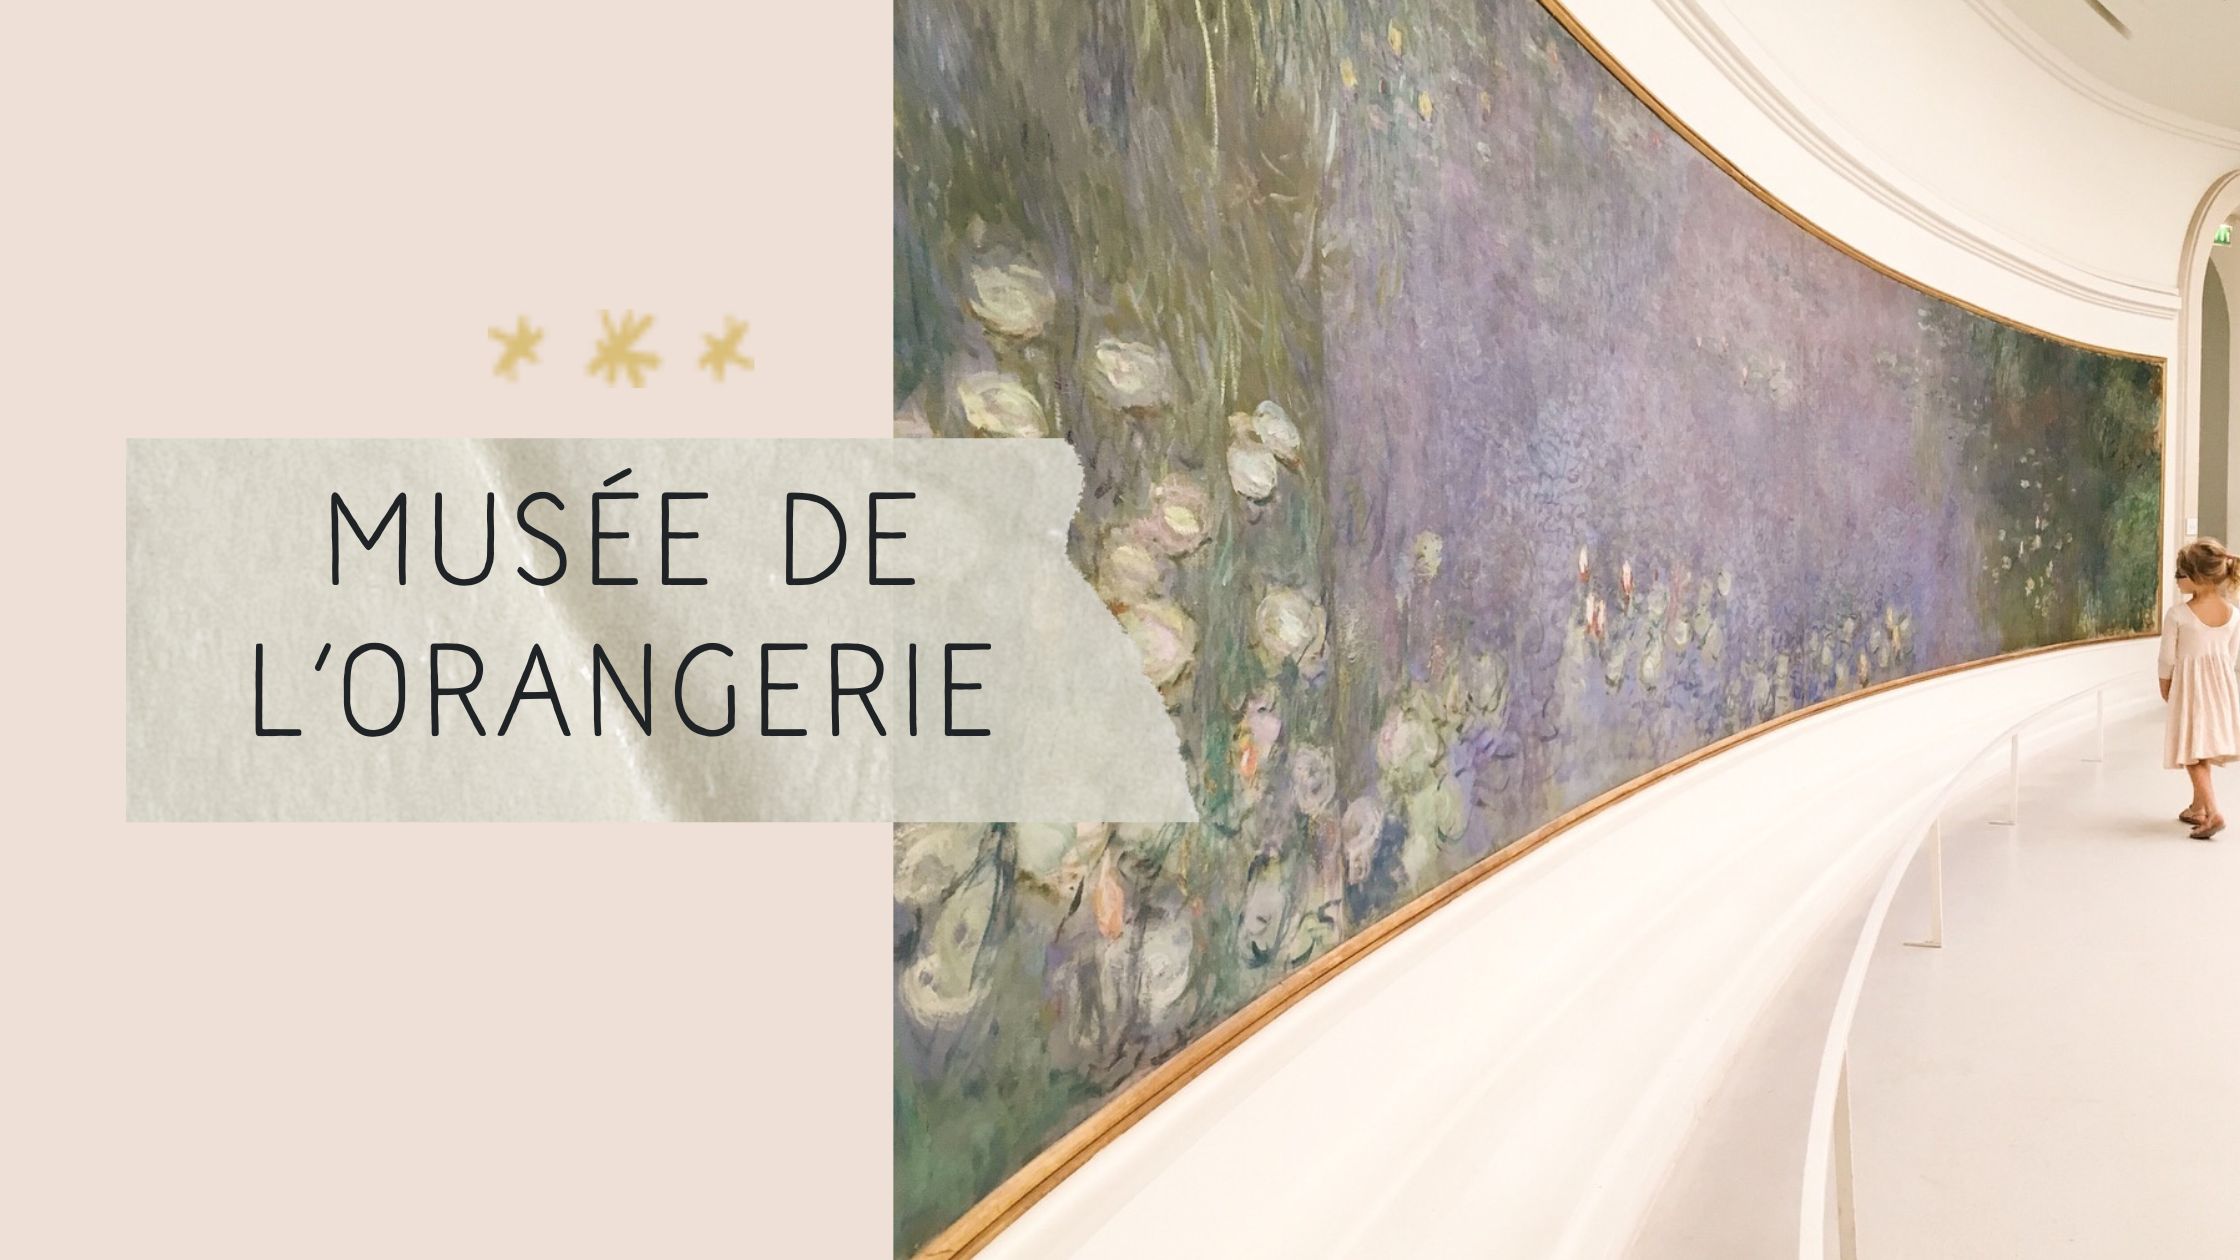 Musee de l'Orangerie, Paris, Monet's waterlilies